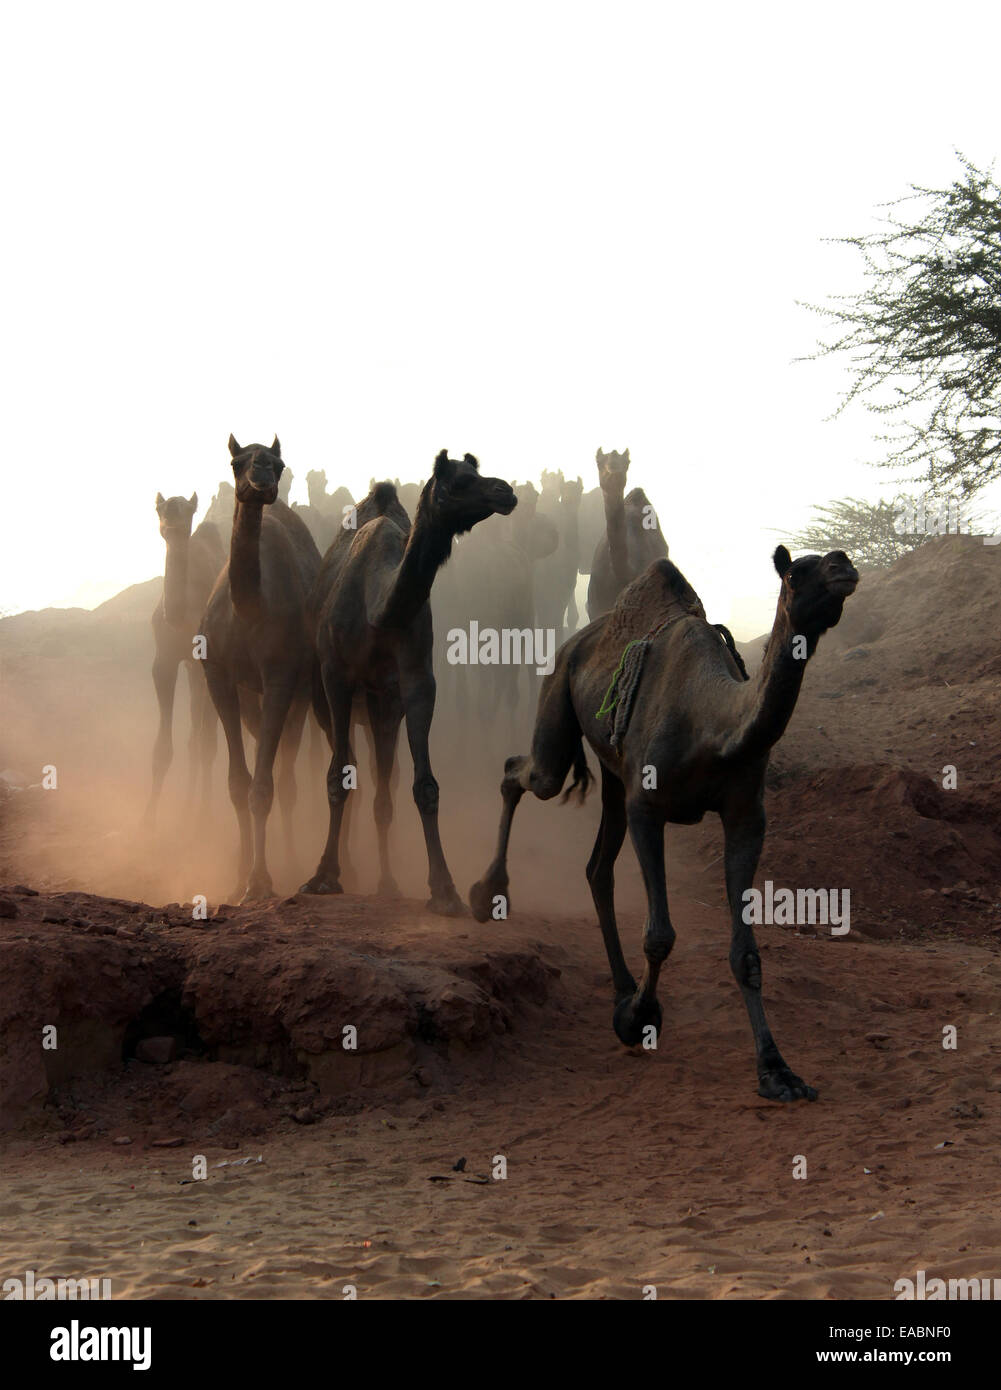 Animale, gli animali, cammello, cammelli, cultura, deserto dromedari, equo, India, luoghi all'aperto, all'aperto, pushkar, Rajasthan, sun Foto Stock